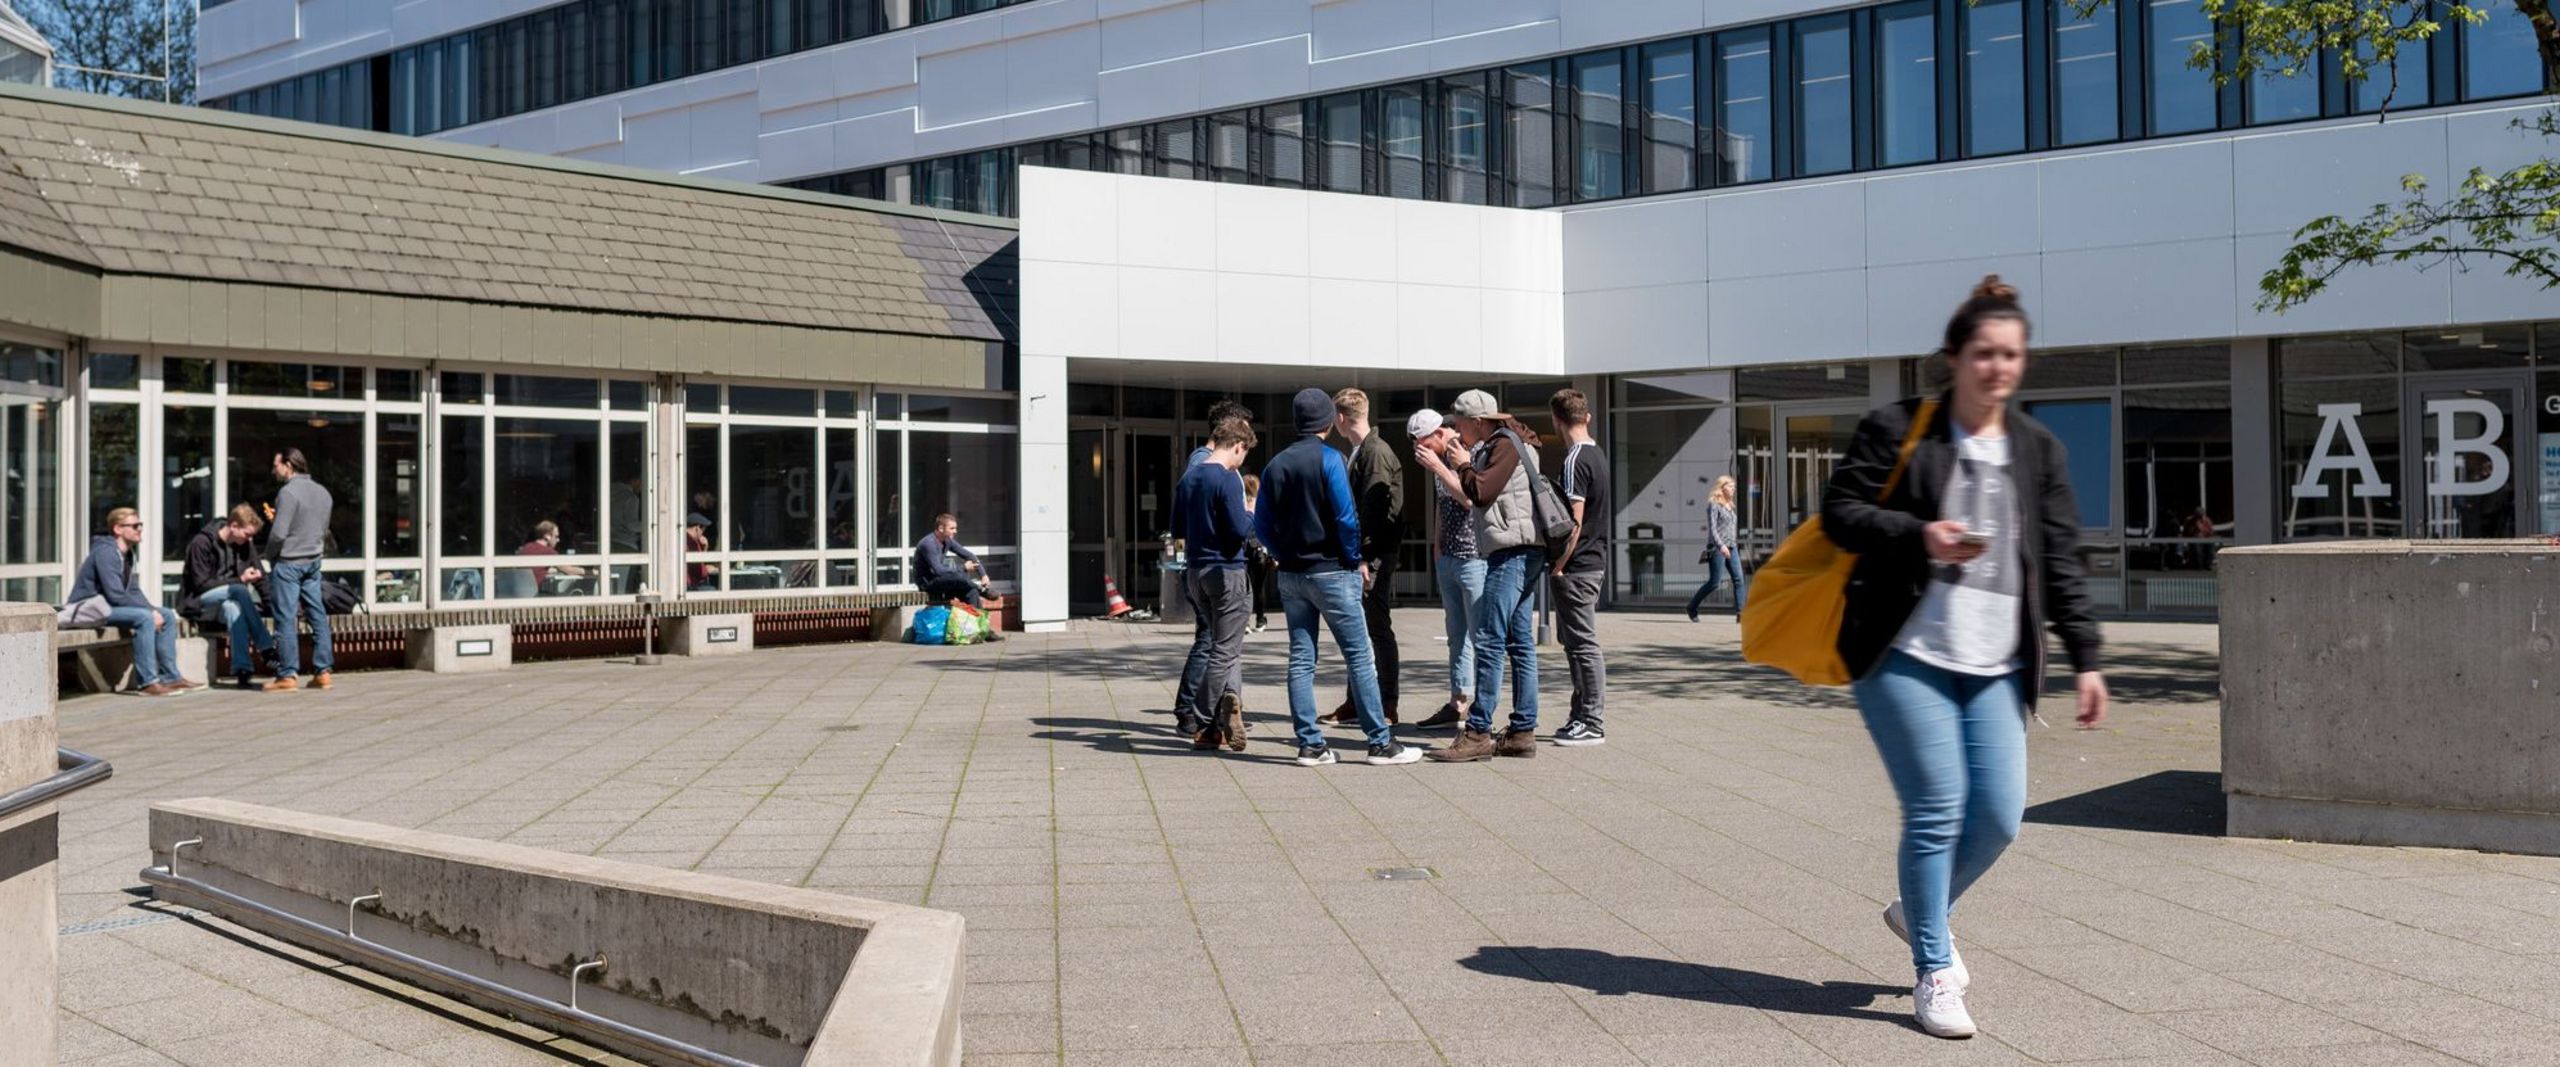 Studierende vor dem Eingang des AB-Gebäudes auf dem Campus Neustadtswall.